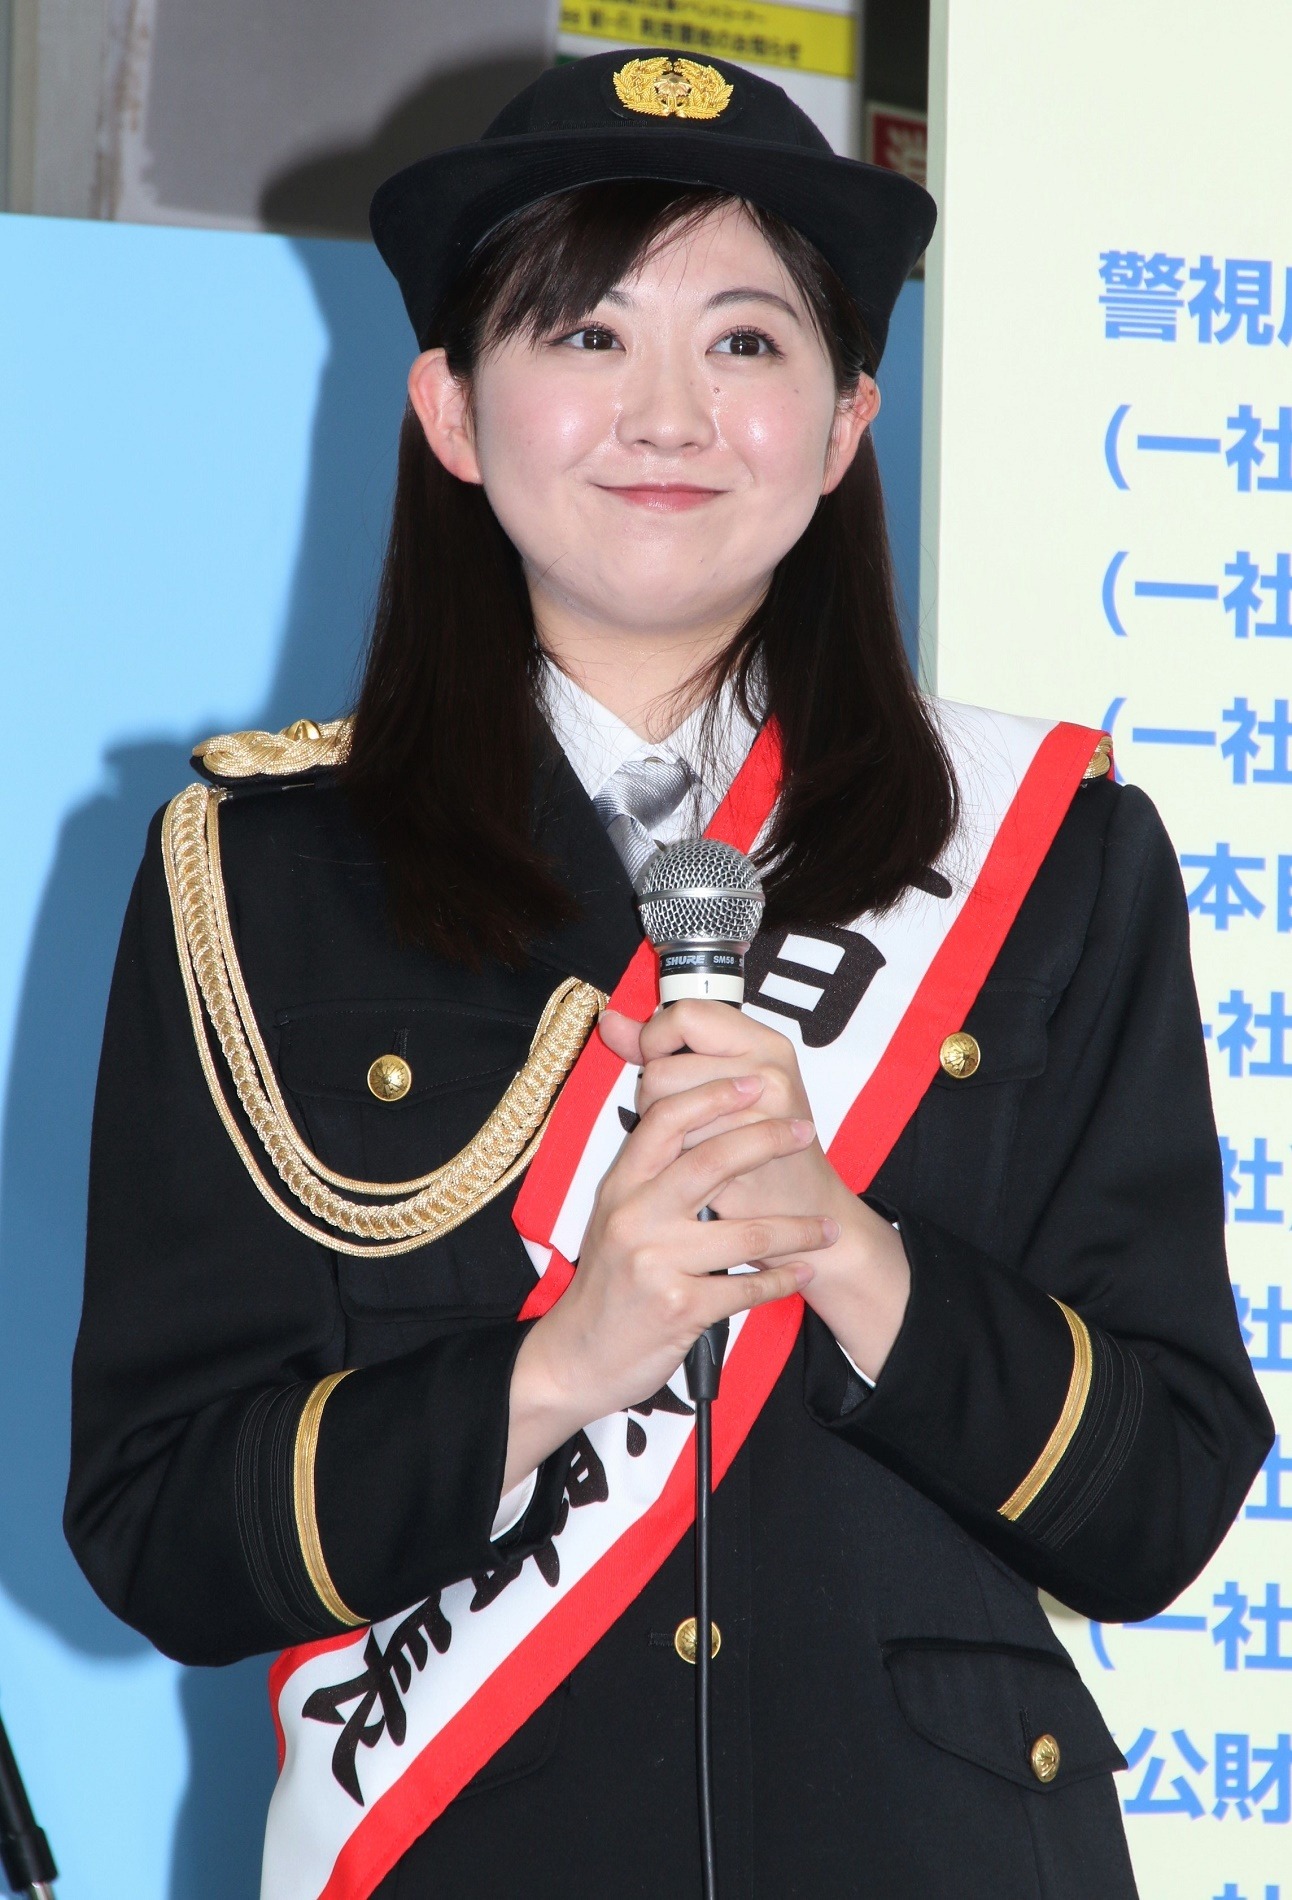 小川真奈が 新宿警察1日署長 に就任 女性警察官の制服姿で 身が引き締まる思い 2枚目の写真 画像 Rbb Today